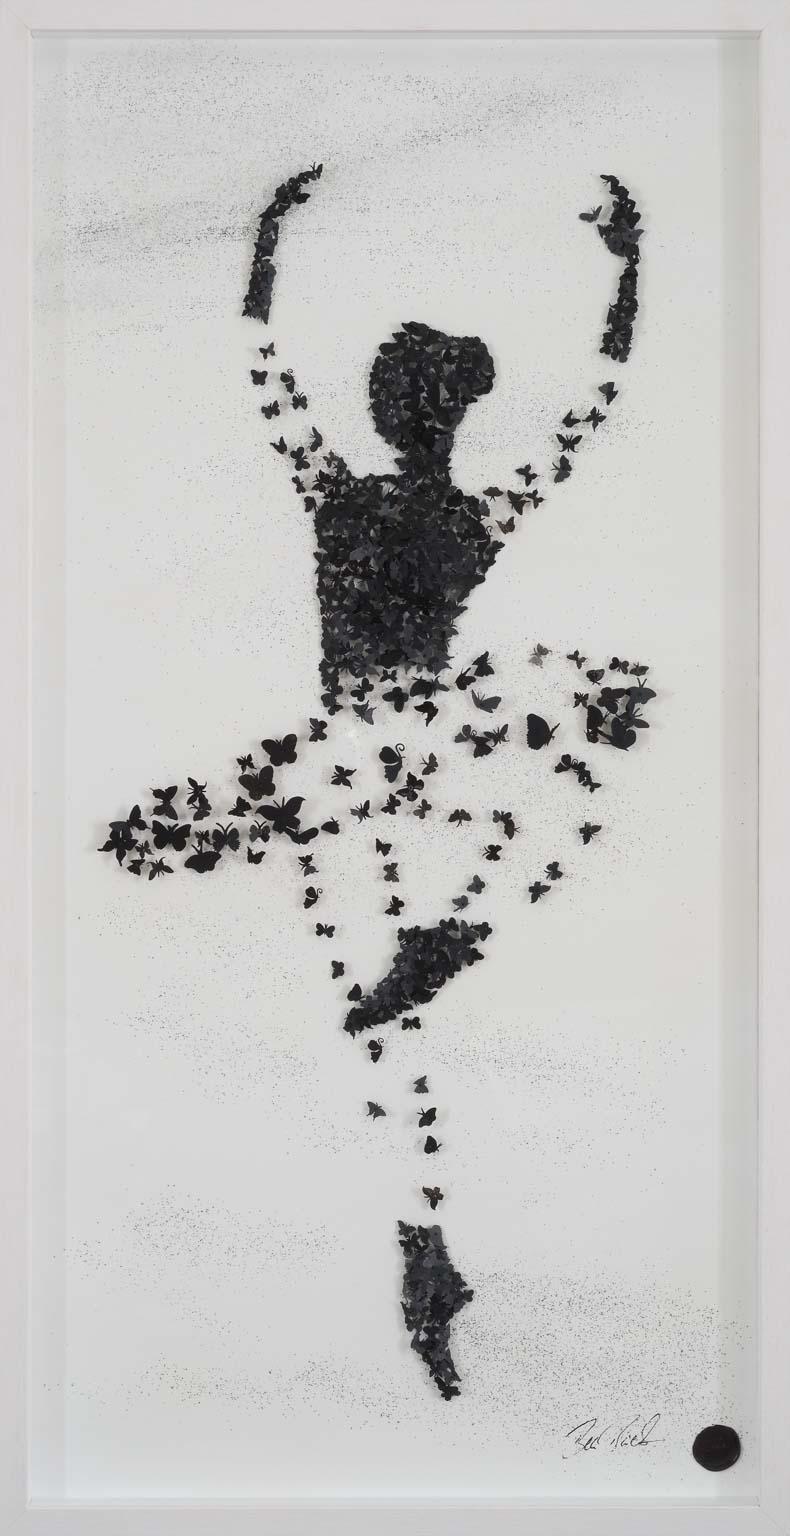 Ballerina- contemporary art work of dancing ballerina through swarm butterflies - Mixed Media Art by Ben Buechner